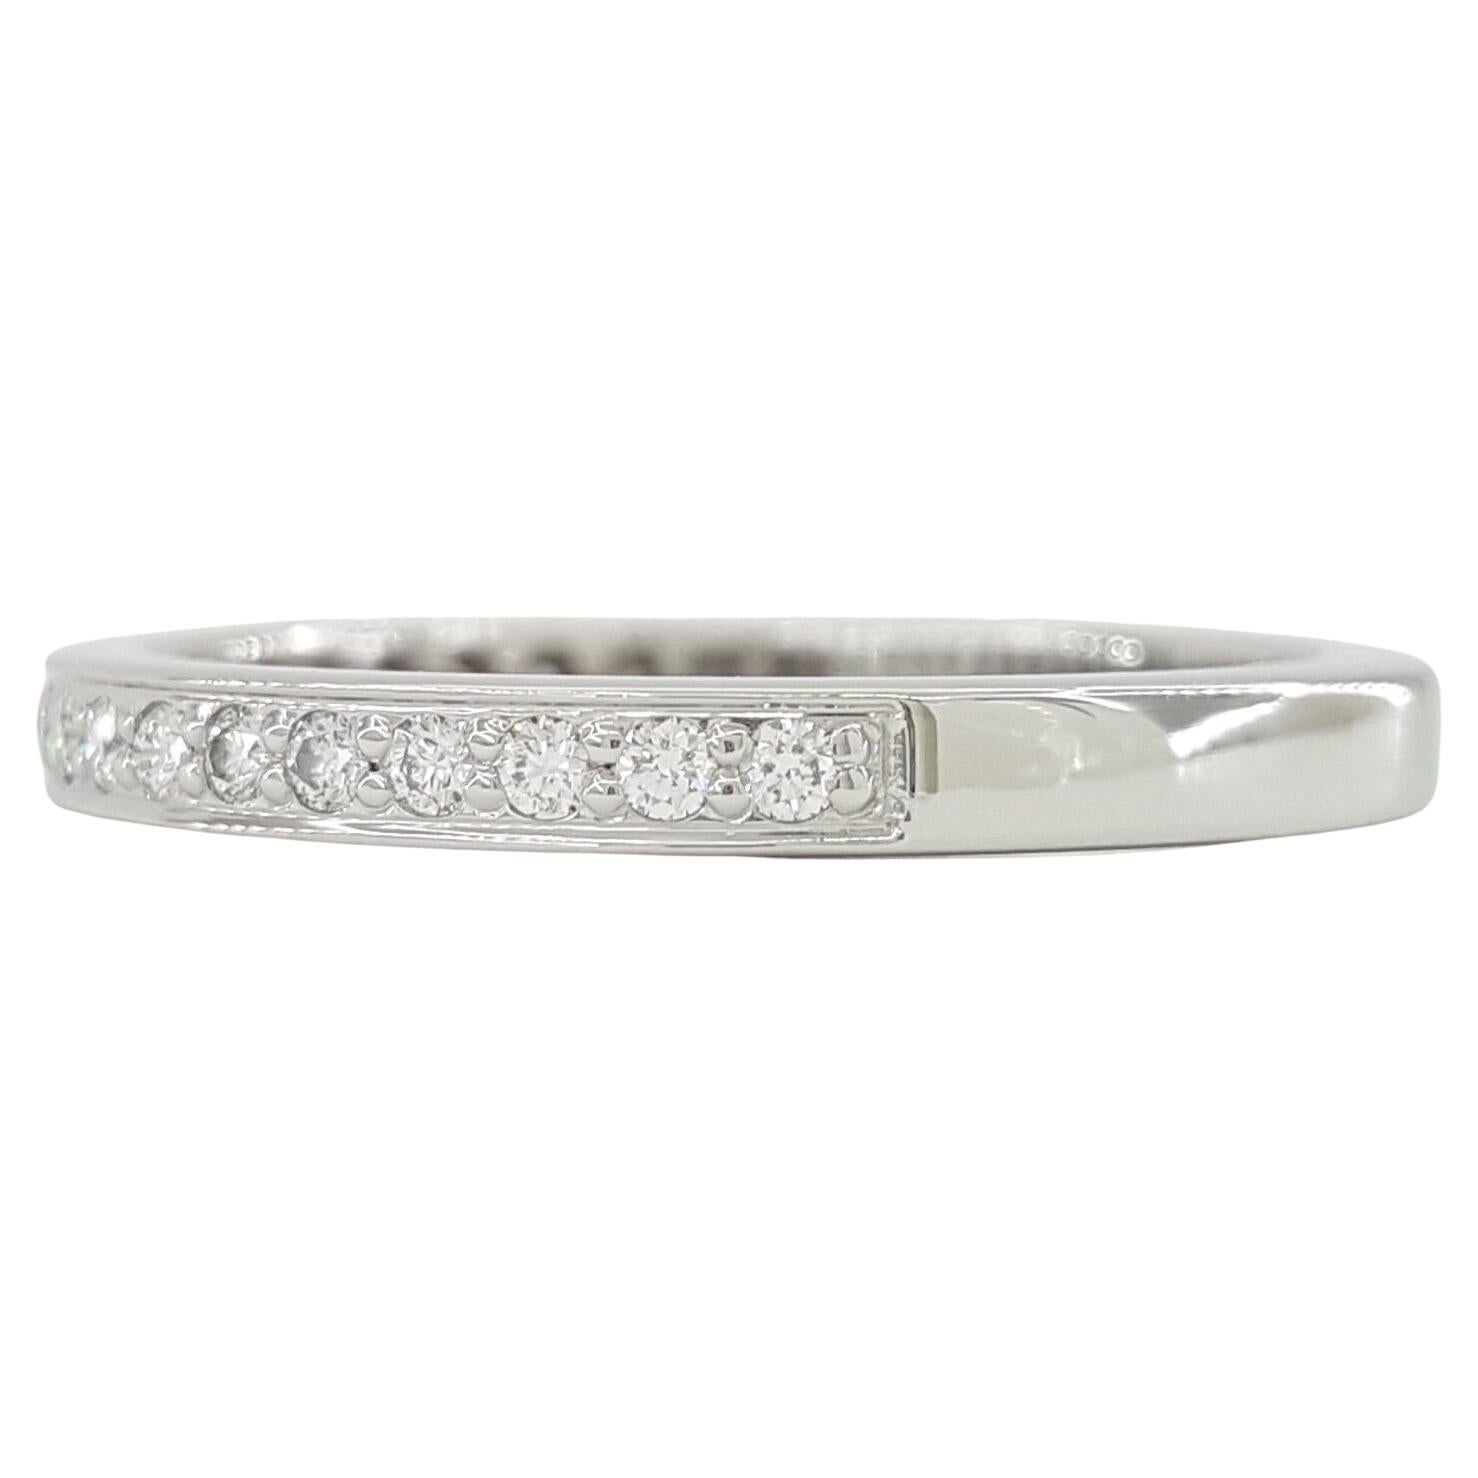 Véritable anneau de mariage/anniversaire demi-cercle en platine de Tiffany & Co avec un poids total de diamants de 0,22 ct. La bague, d'un poids de 4 grammes et d'une taille de 6,5, met en valeur 22 diamants ronds naturels de taille brillant de